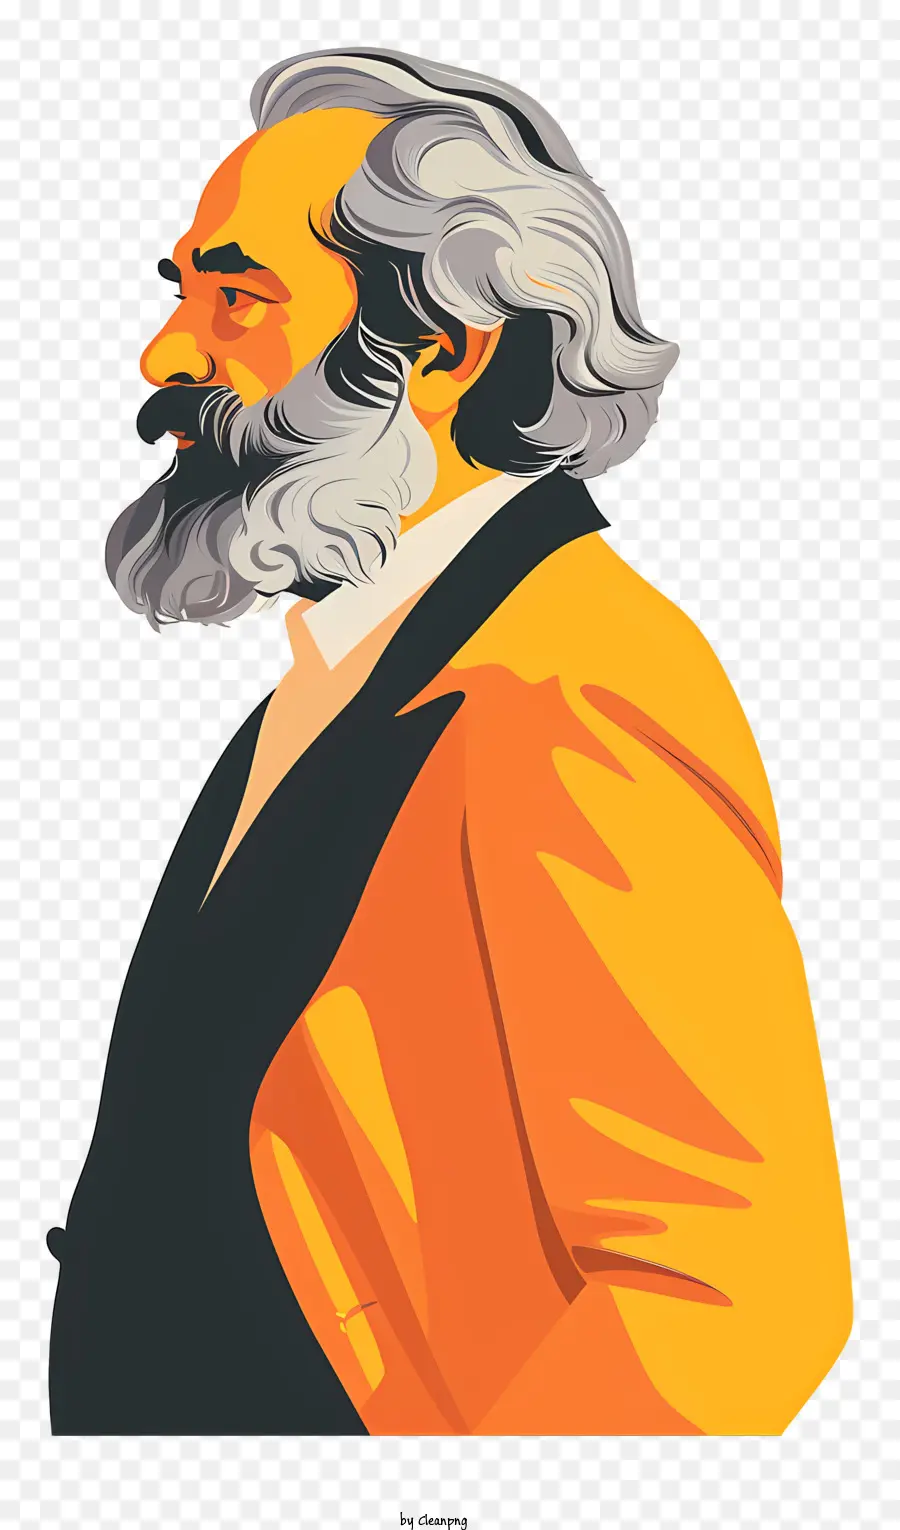 Karl Marx - Mann im Profil mit Orangenjacke und Krawatte